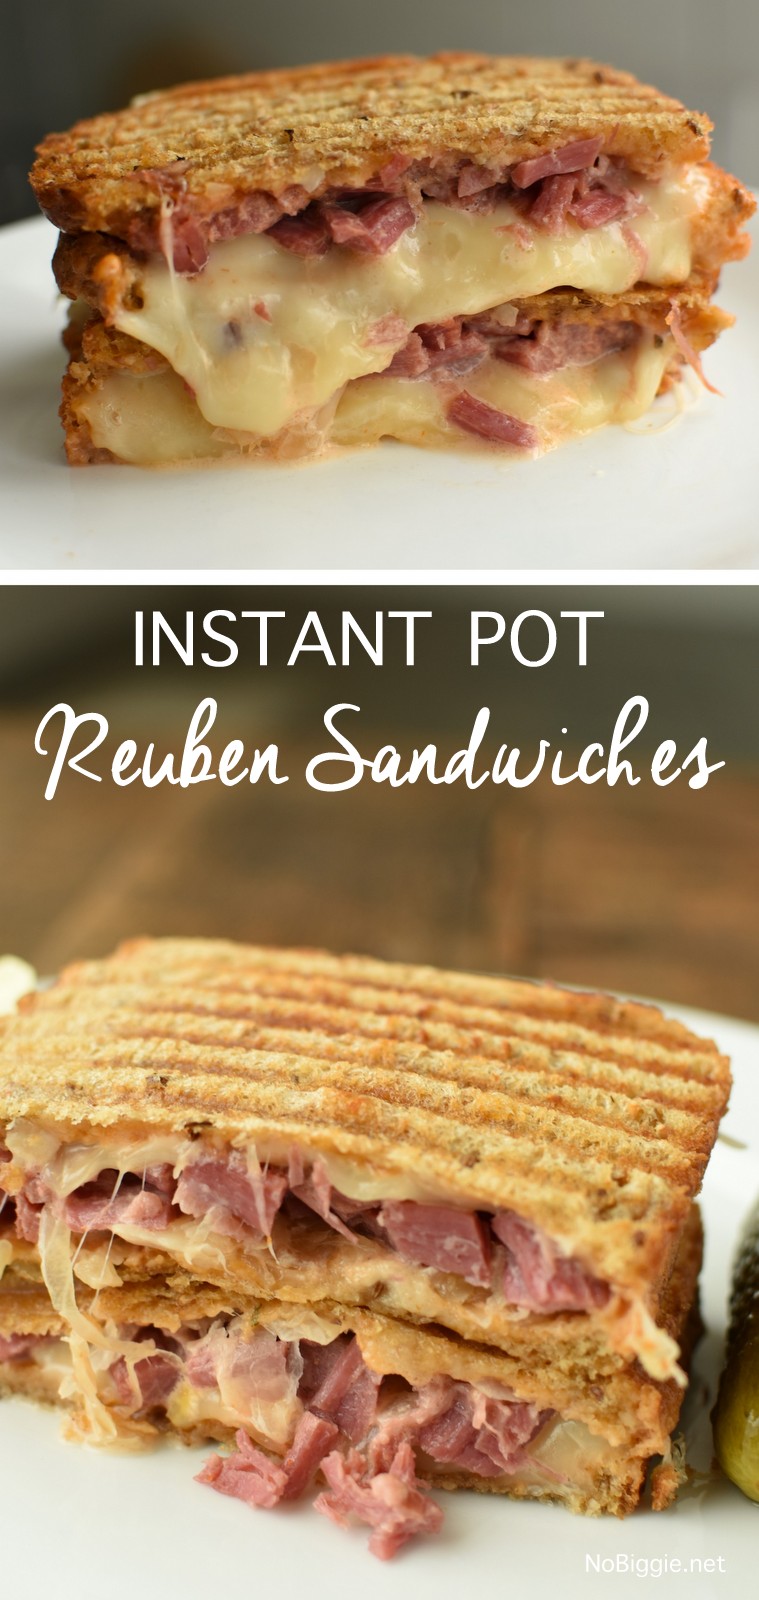 Instant Pot Reuben Sandwiches | NoBiggie.net